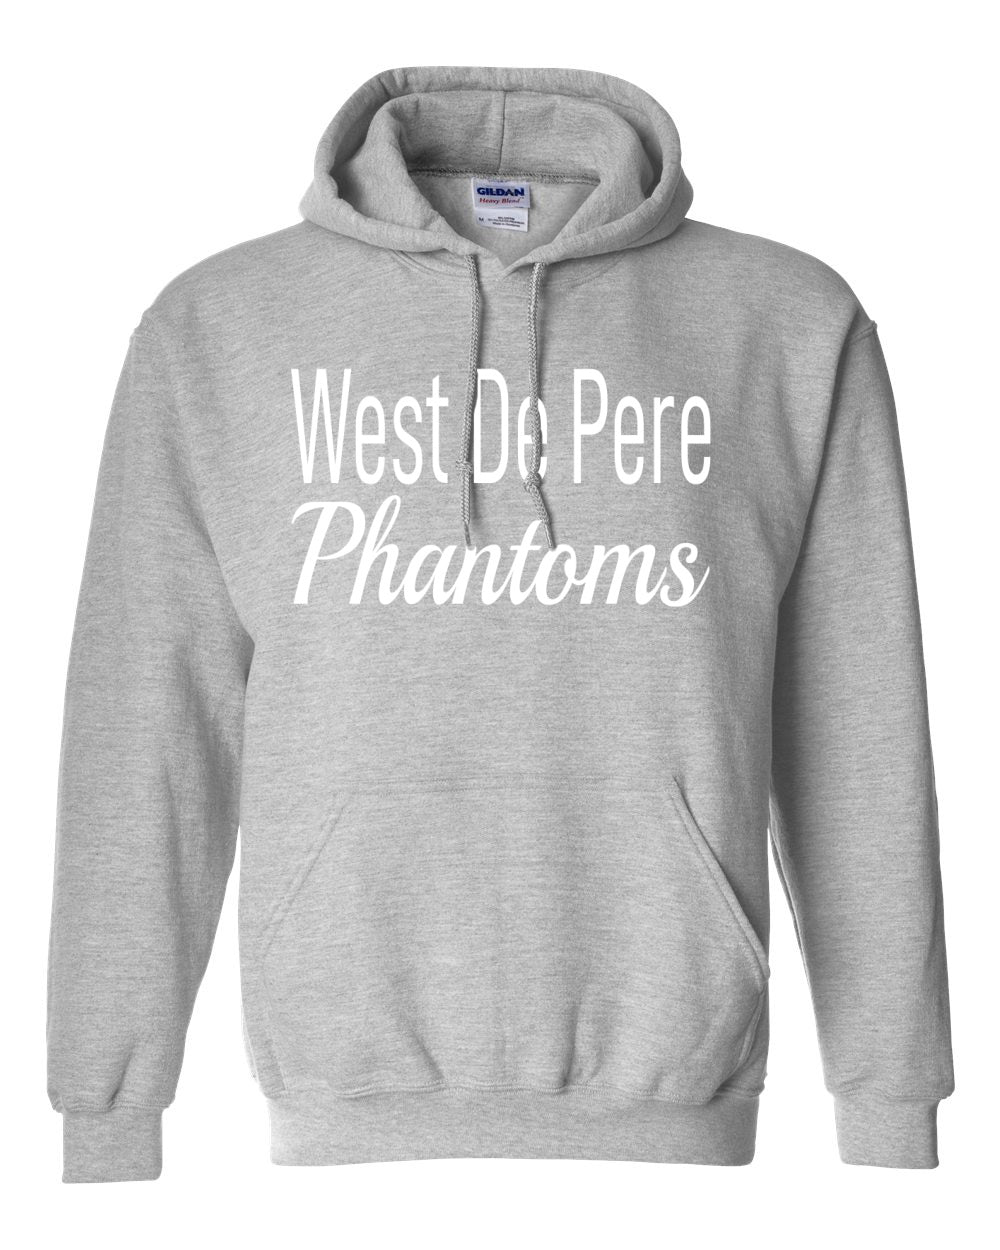 West De Pere Phantoms Merch - Tees, Long Sleeve Tee, Crewneck or Hoodie - Block & Script